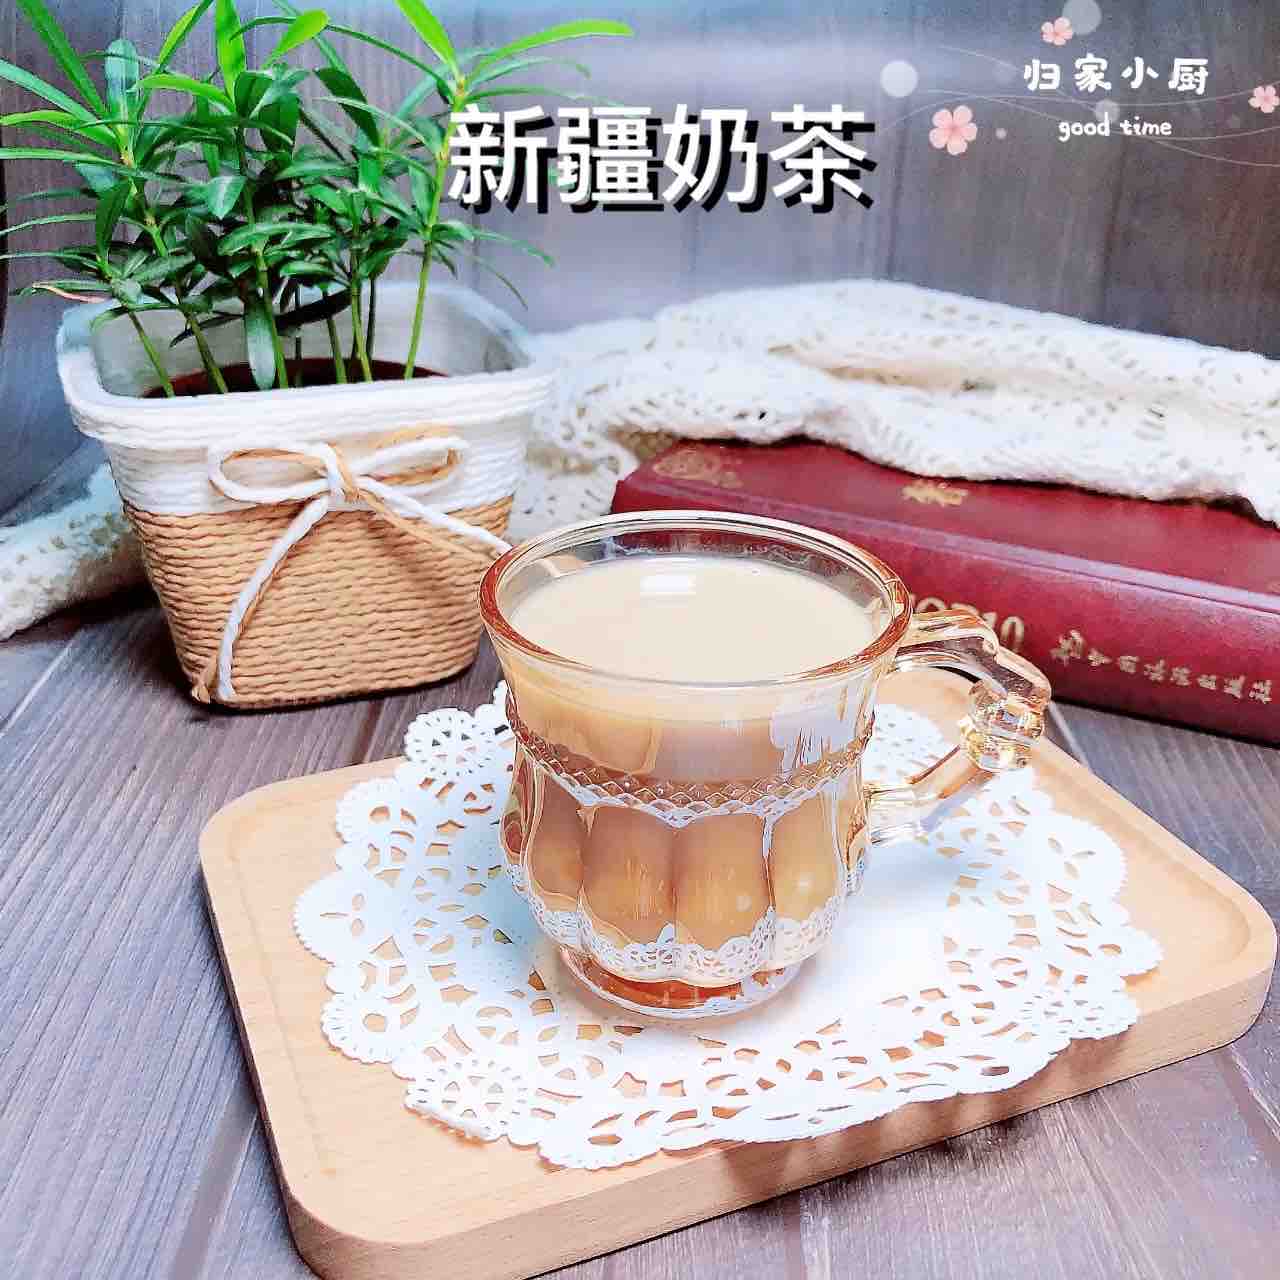 Xinjiang Milk Tea recipe